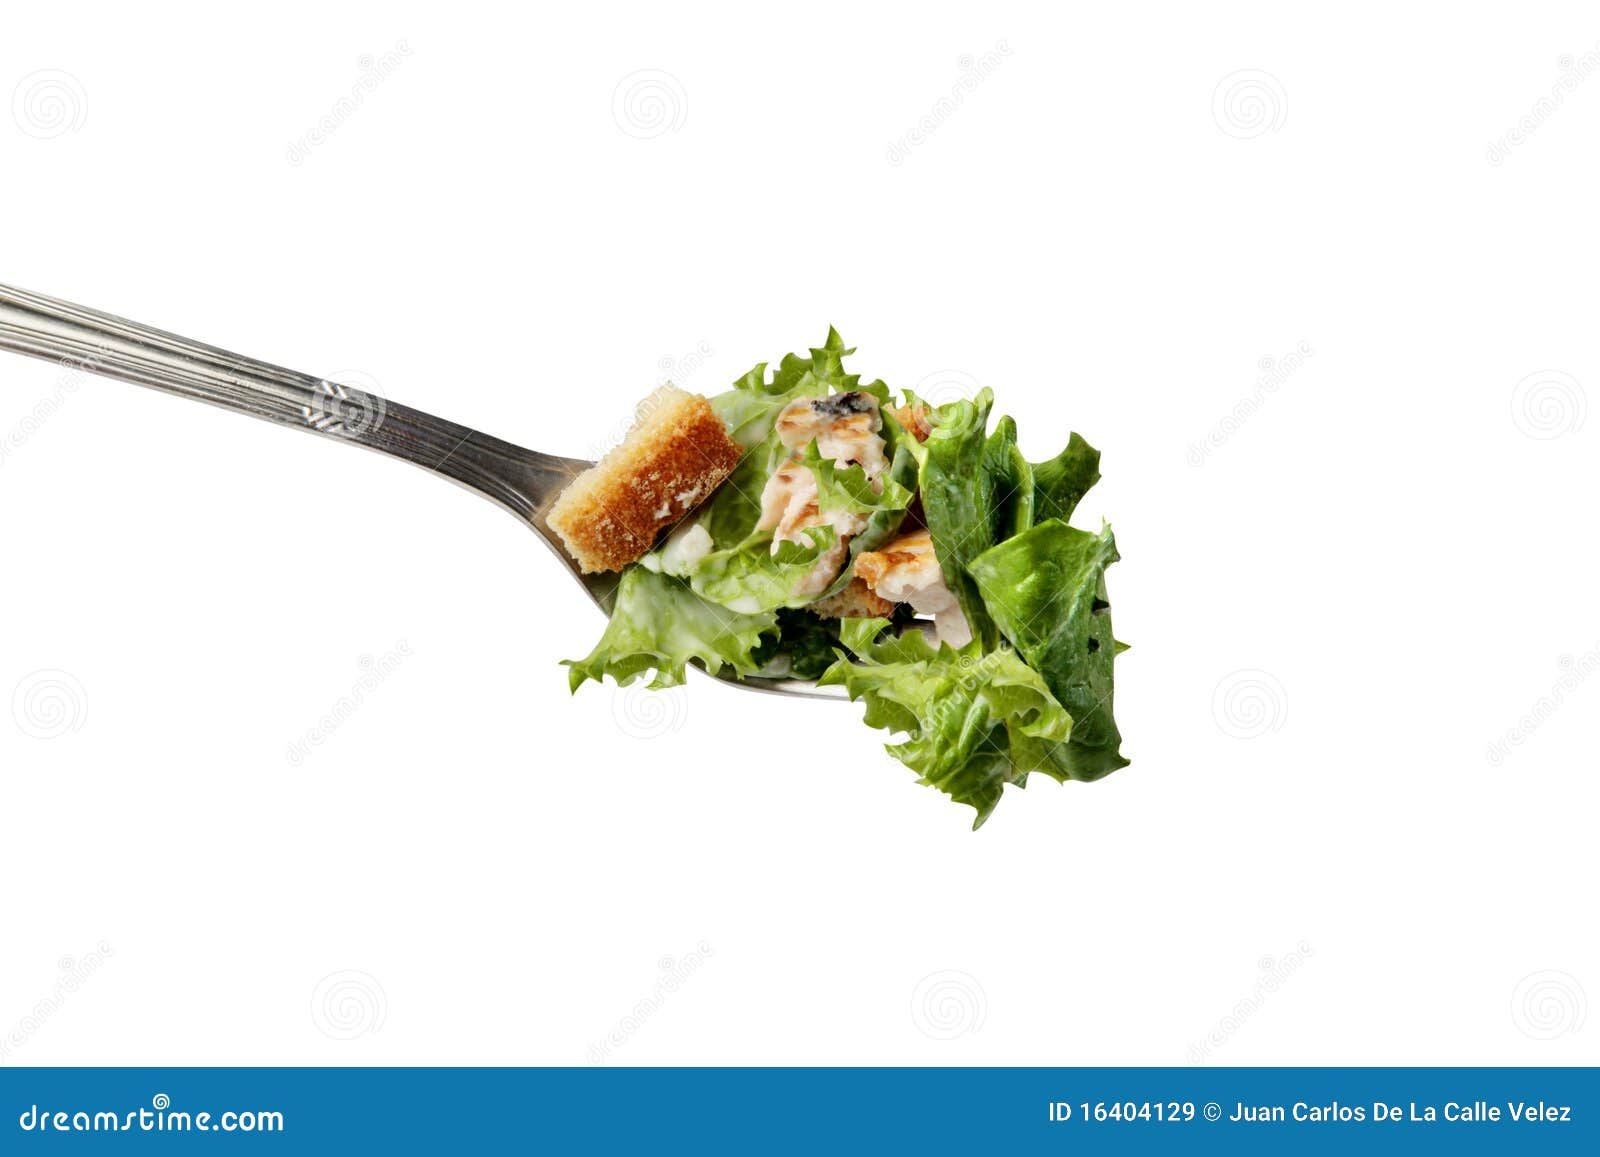 cesar salad in a fork